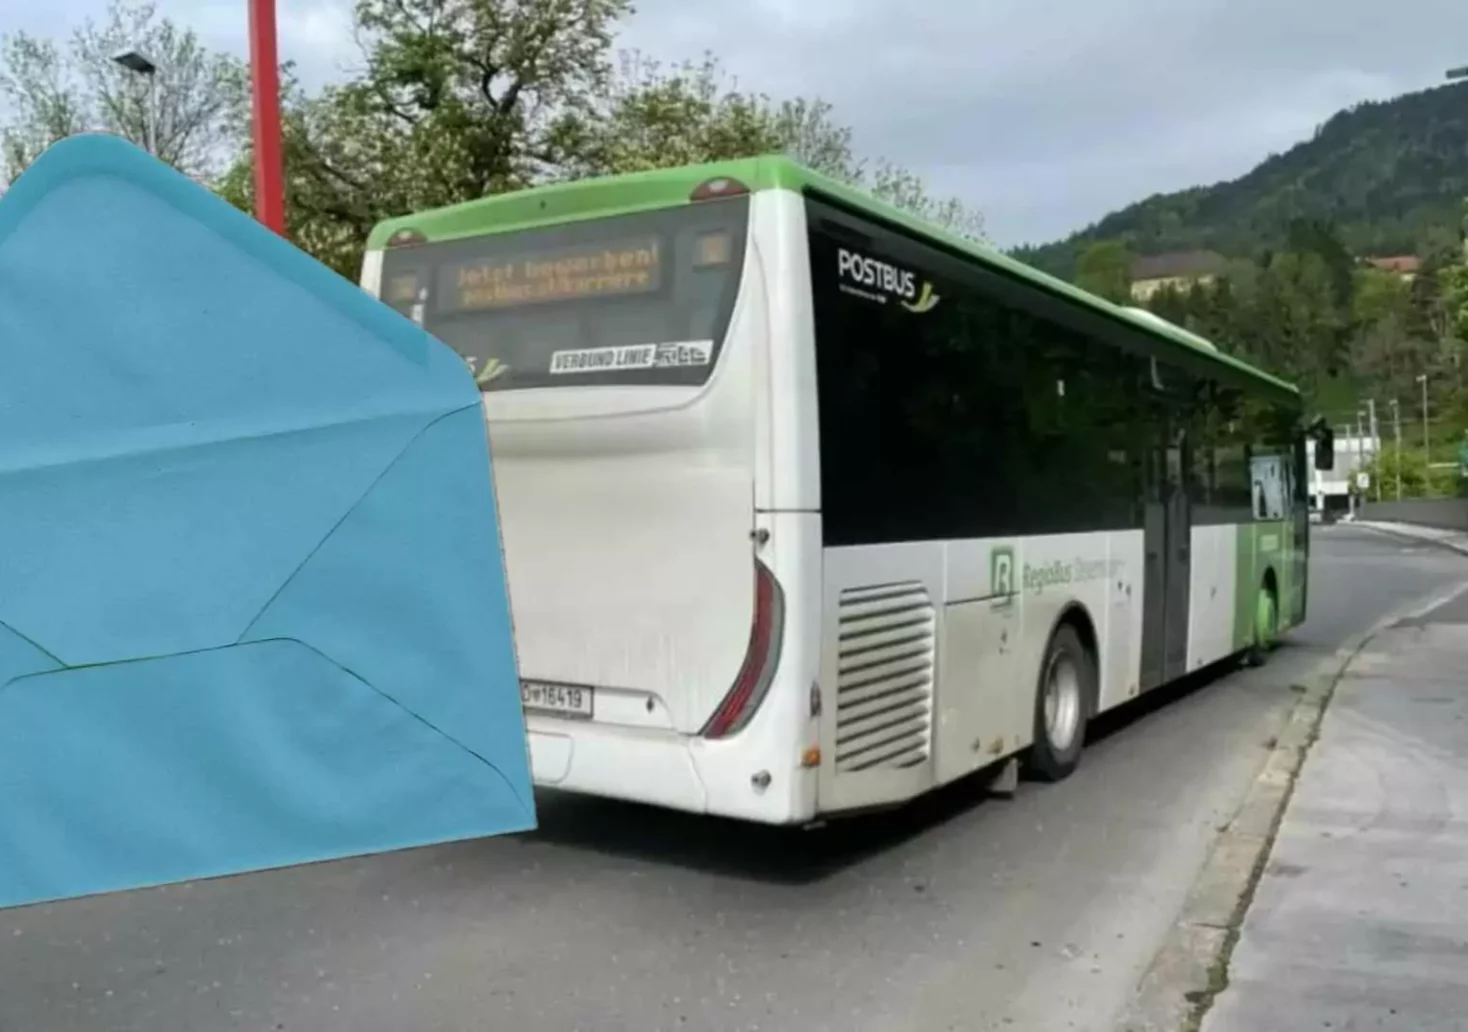 Foto in Beitrag von 5min.at: Zu sehen ist ein Postbus in Leoben. Im Vordergrund ist ein Briefumschlag reinmontiert worden.